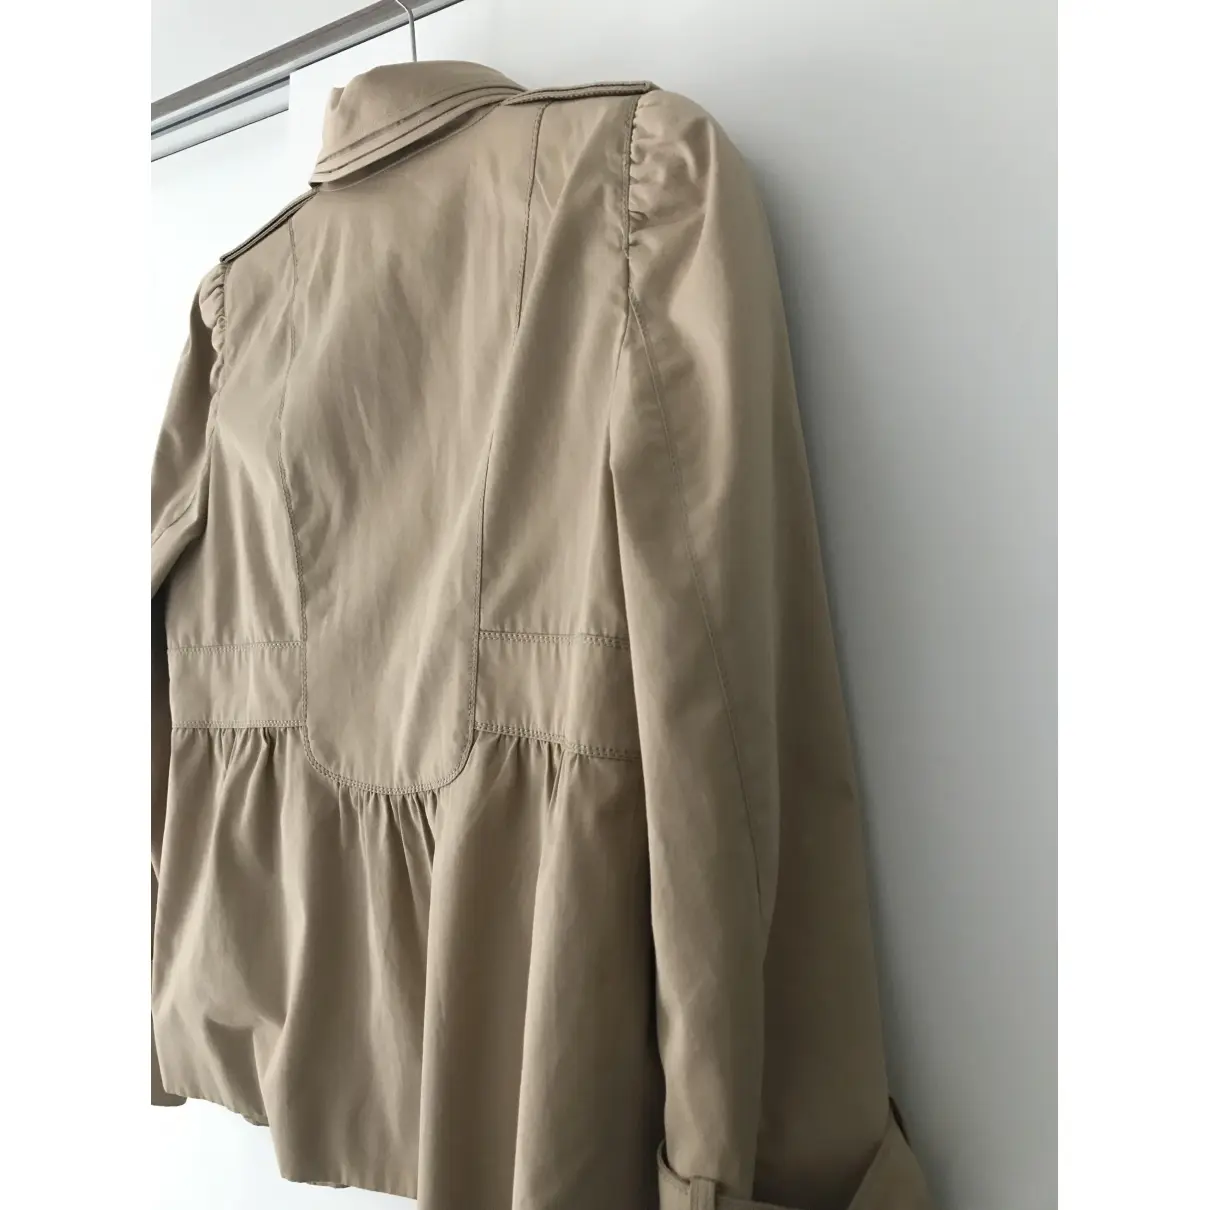 Buy Zara Trench coat online